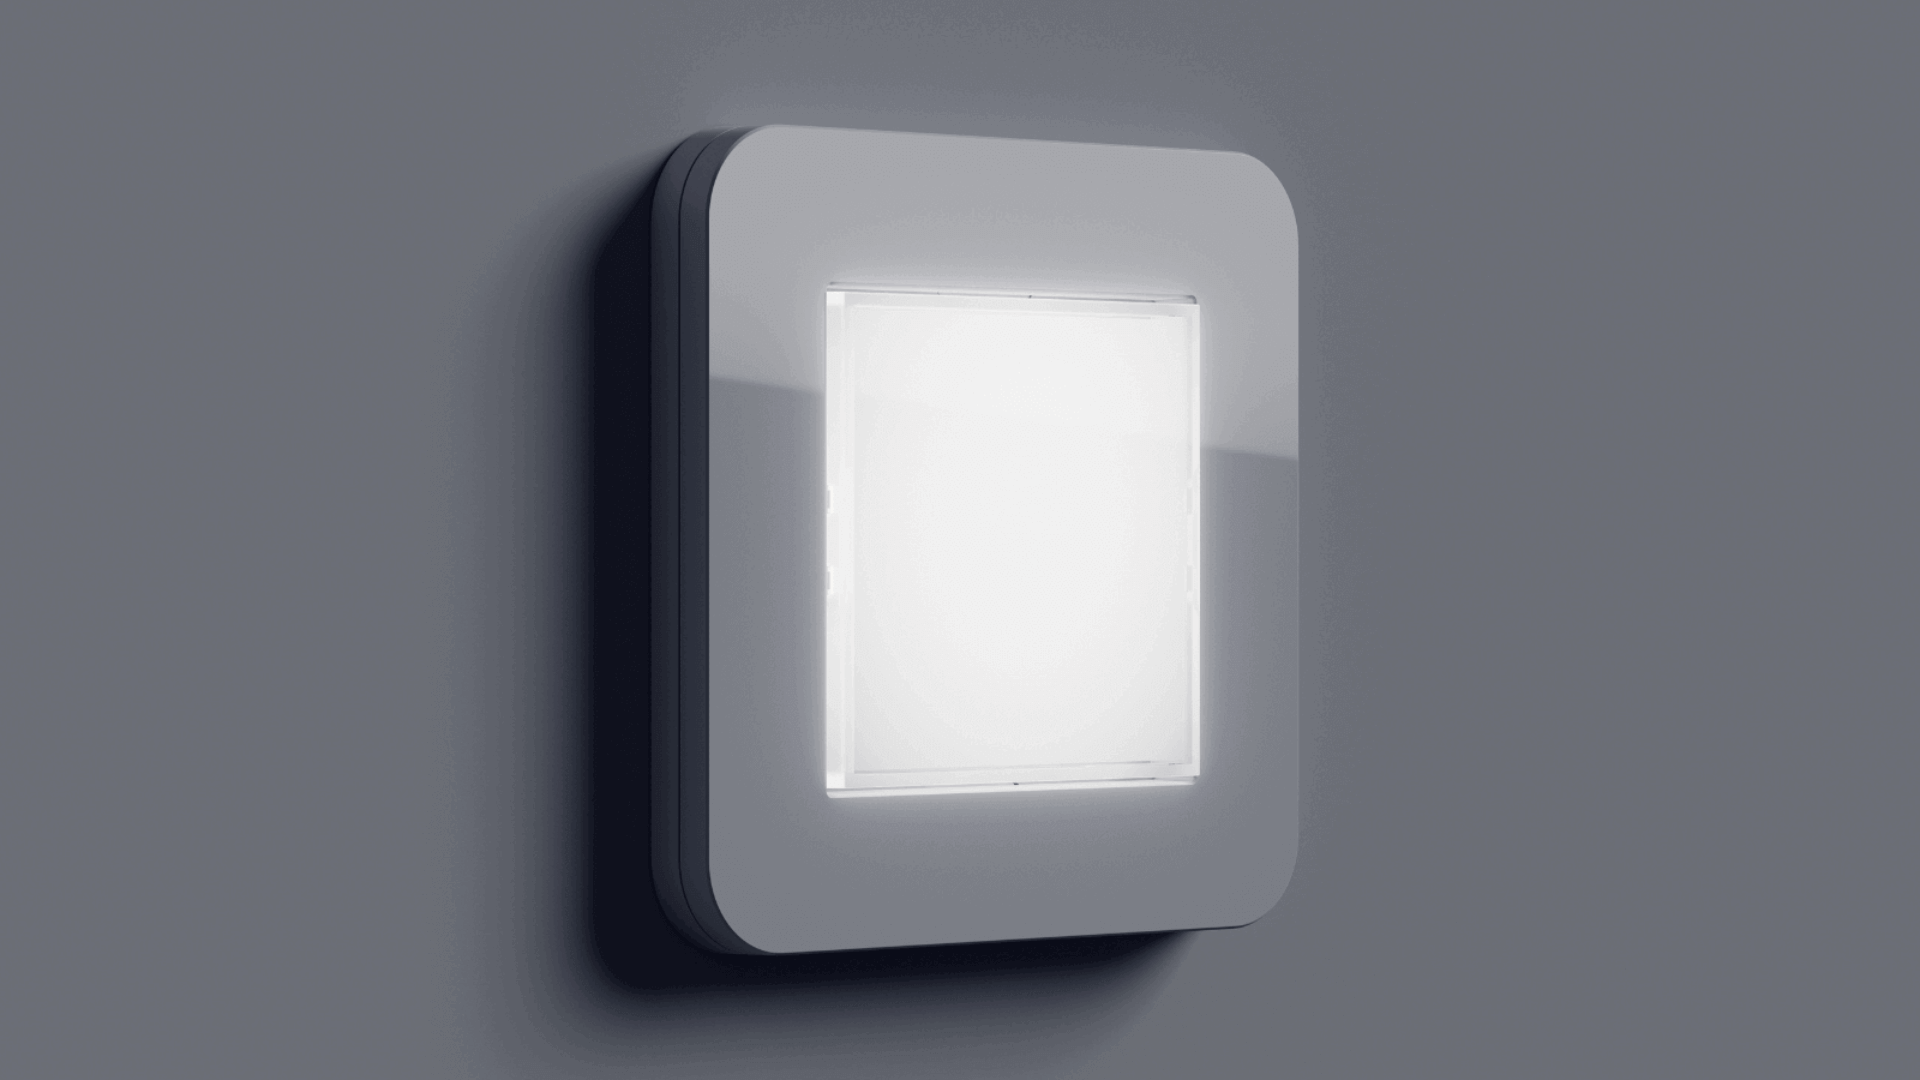 Veilig in het donker met de Gira LED-oriëntatieverlichting: ☑ koel wit ☑ en warm wit licht ☑ verschillende schakelaardesigns. Meer over dit product ➦